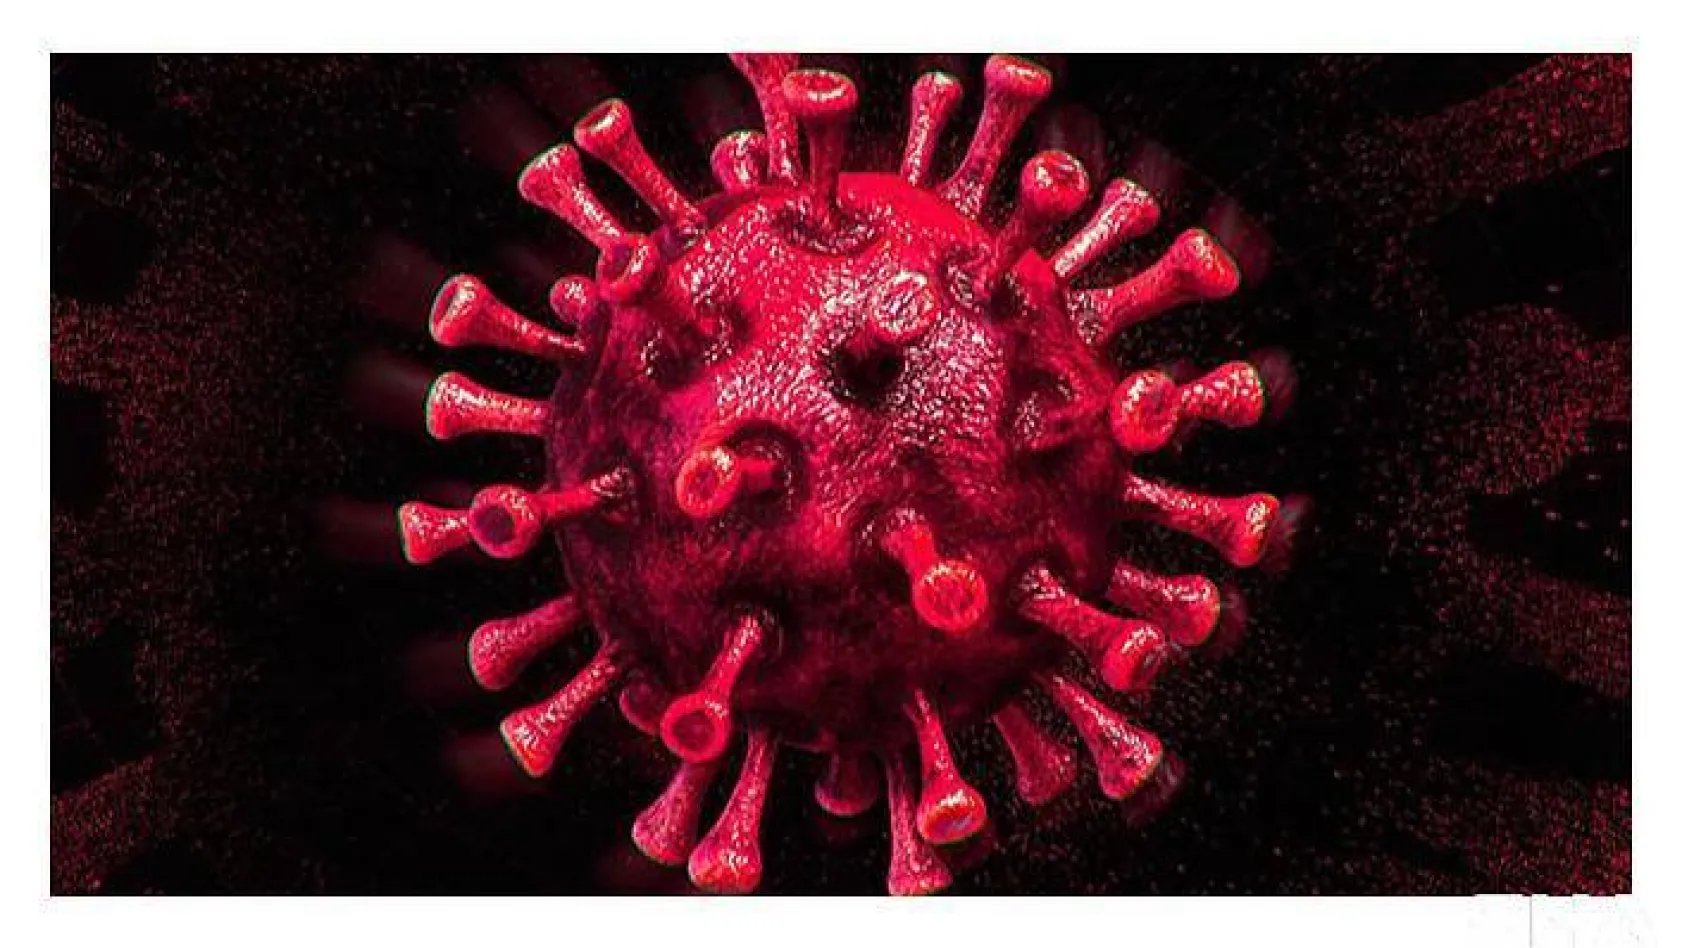 Türkiye'de son 24 saatte 7.945 koronavirüs vakası tespit edildi